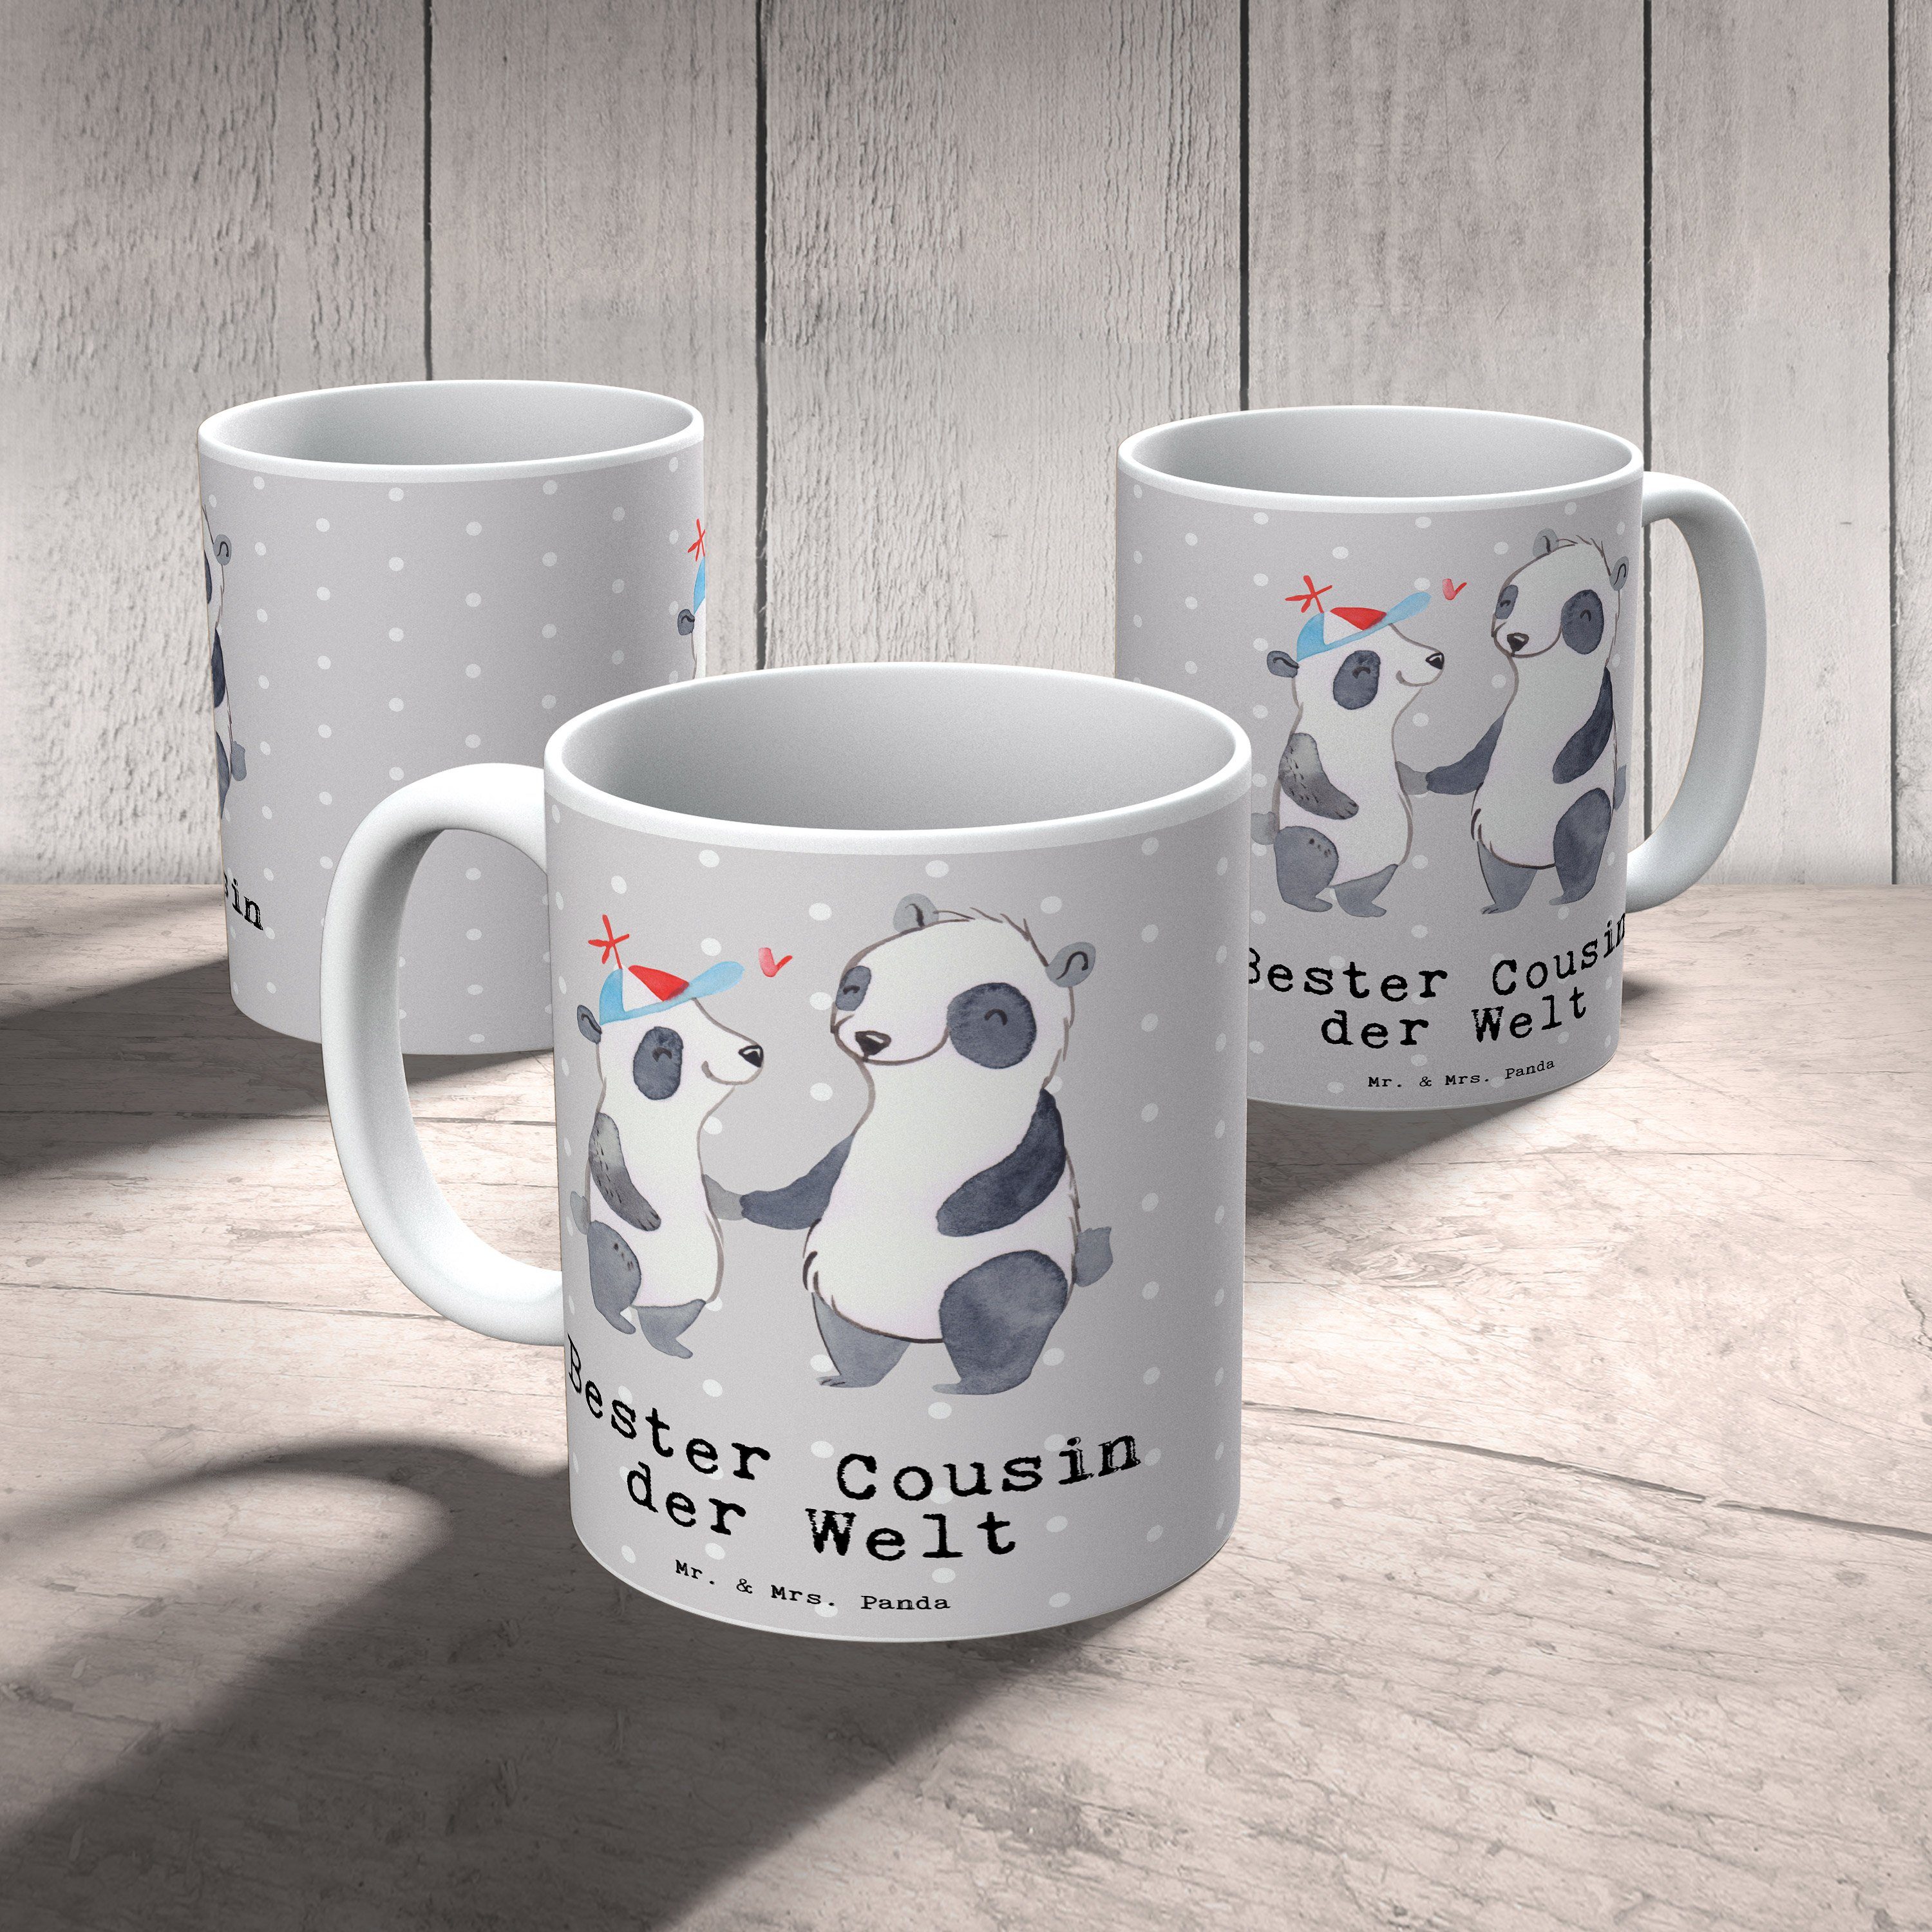 Mr. & Mrs. Panda Geschenk, Vetter, Tasse Welt Bester - der Panda - Grau Gebur, Keramik Cousin Pastell